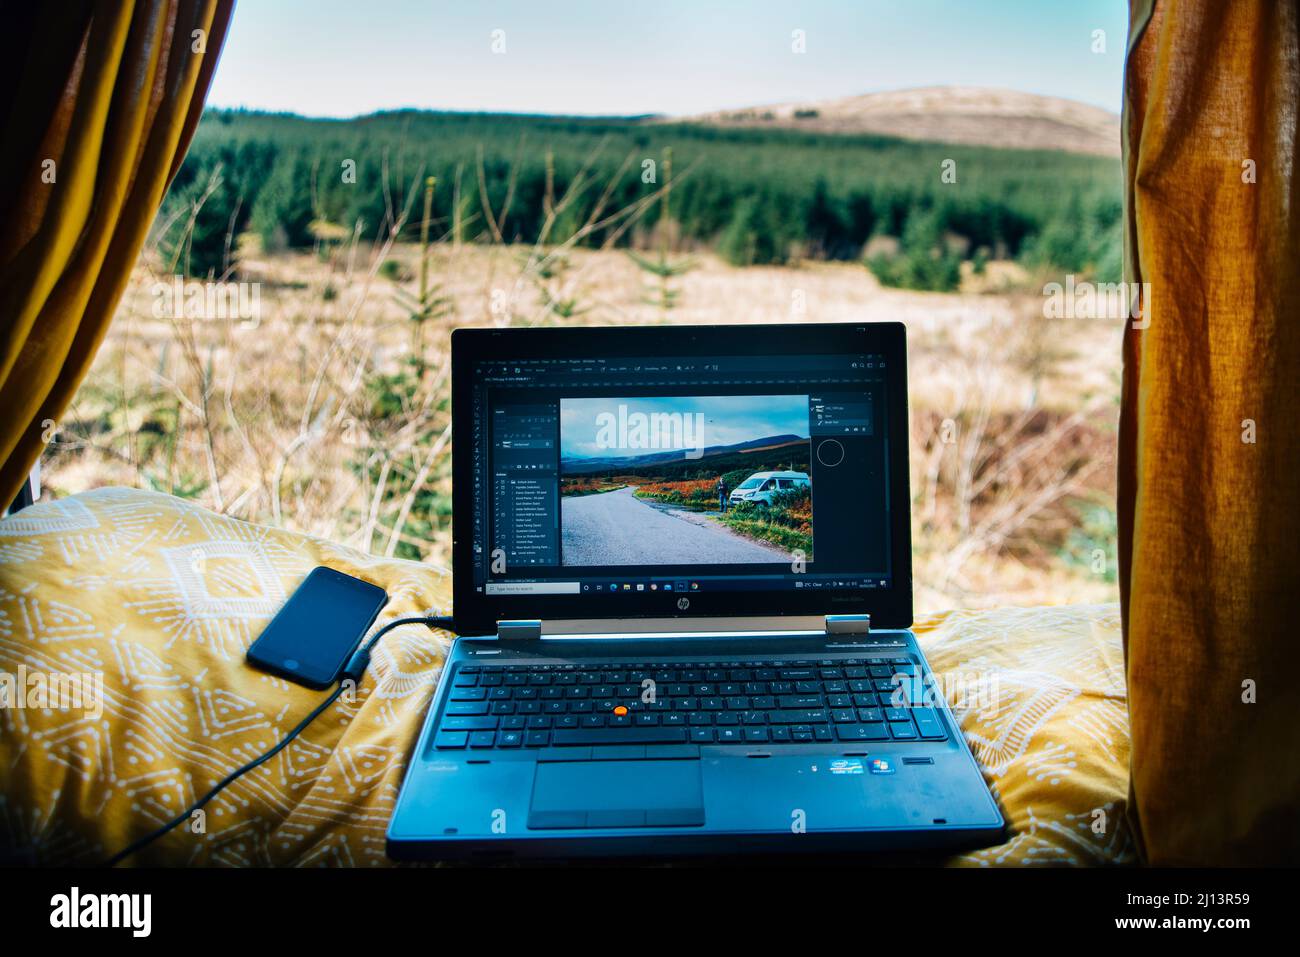 Trabajando desde un campervan en el camino la vida de un nómada digital. Ordenador portátil y teléfono con vistas a la campiña escocesa. Fotografía de viajes Foto de stock